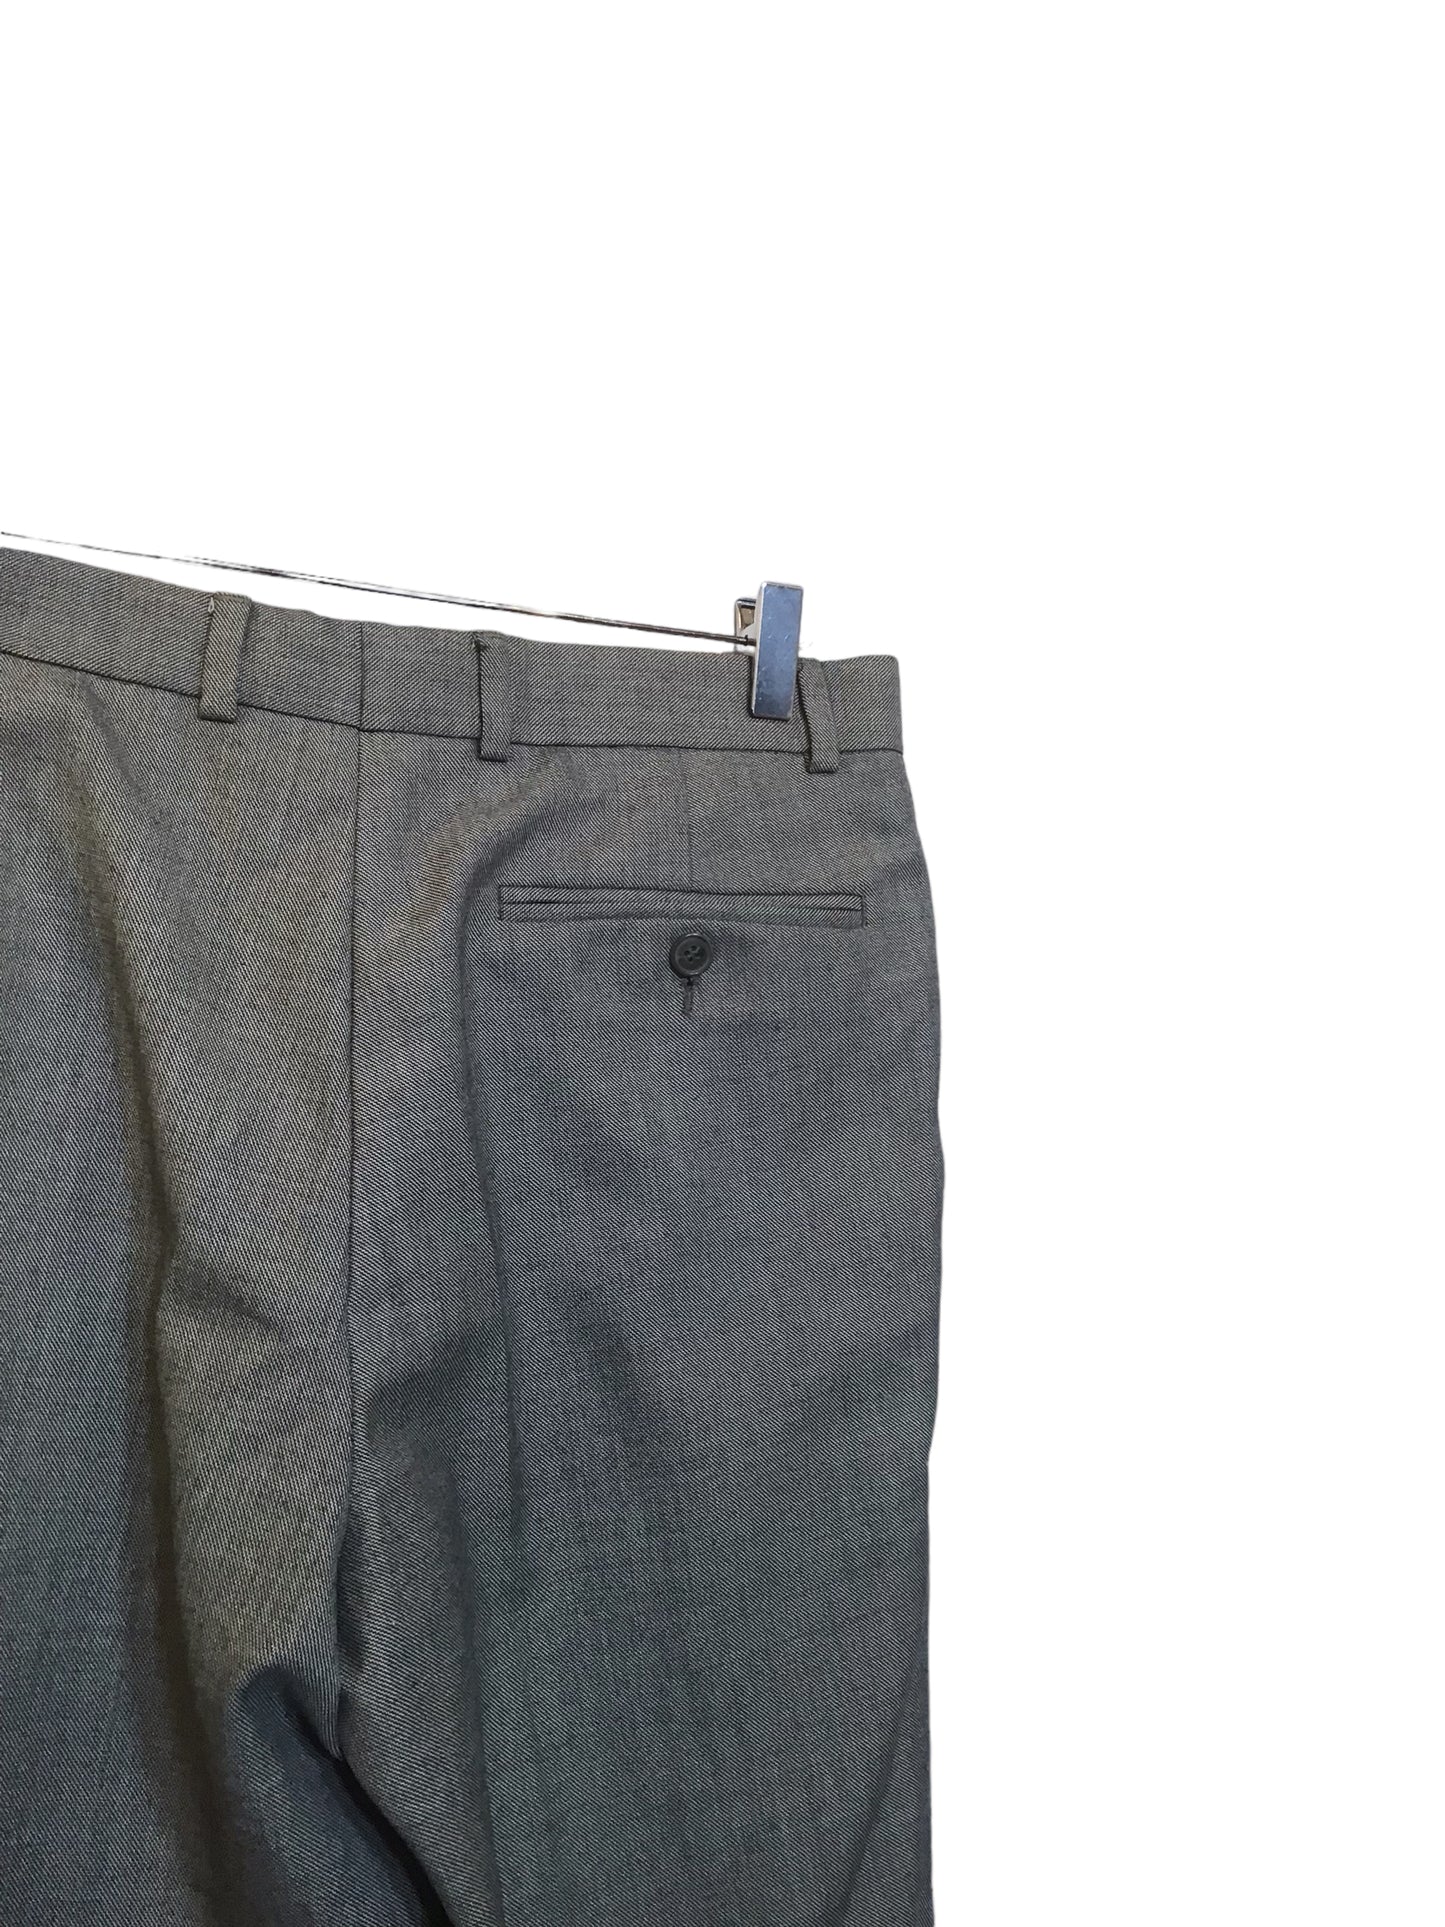 Men’s Suit Trousers (32x29)